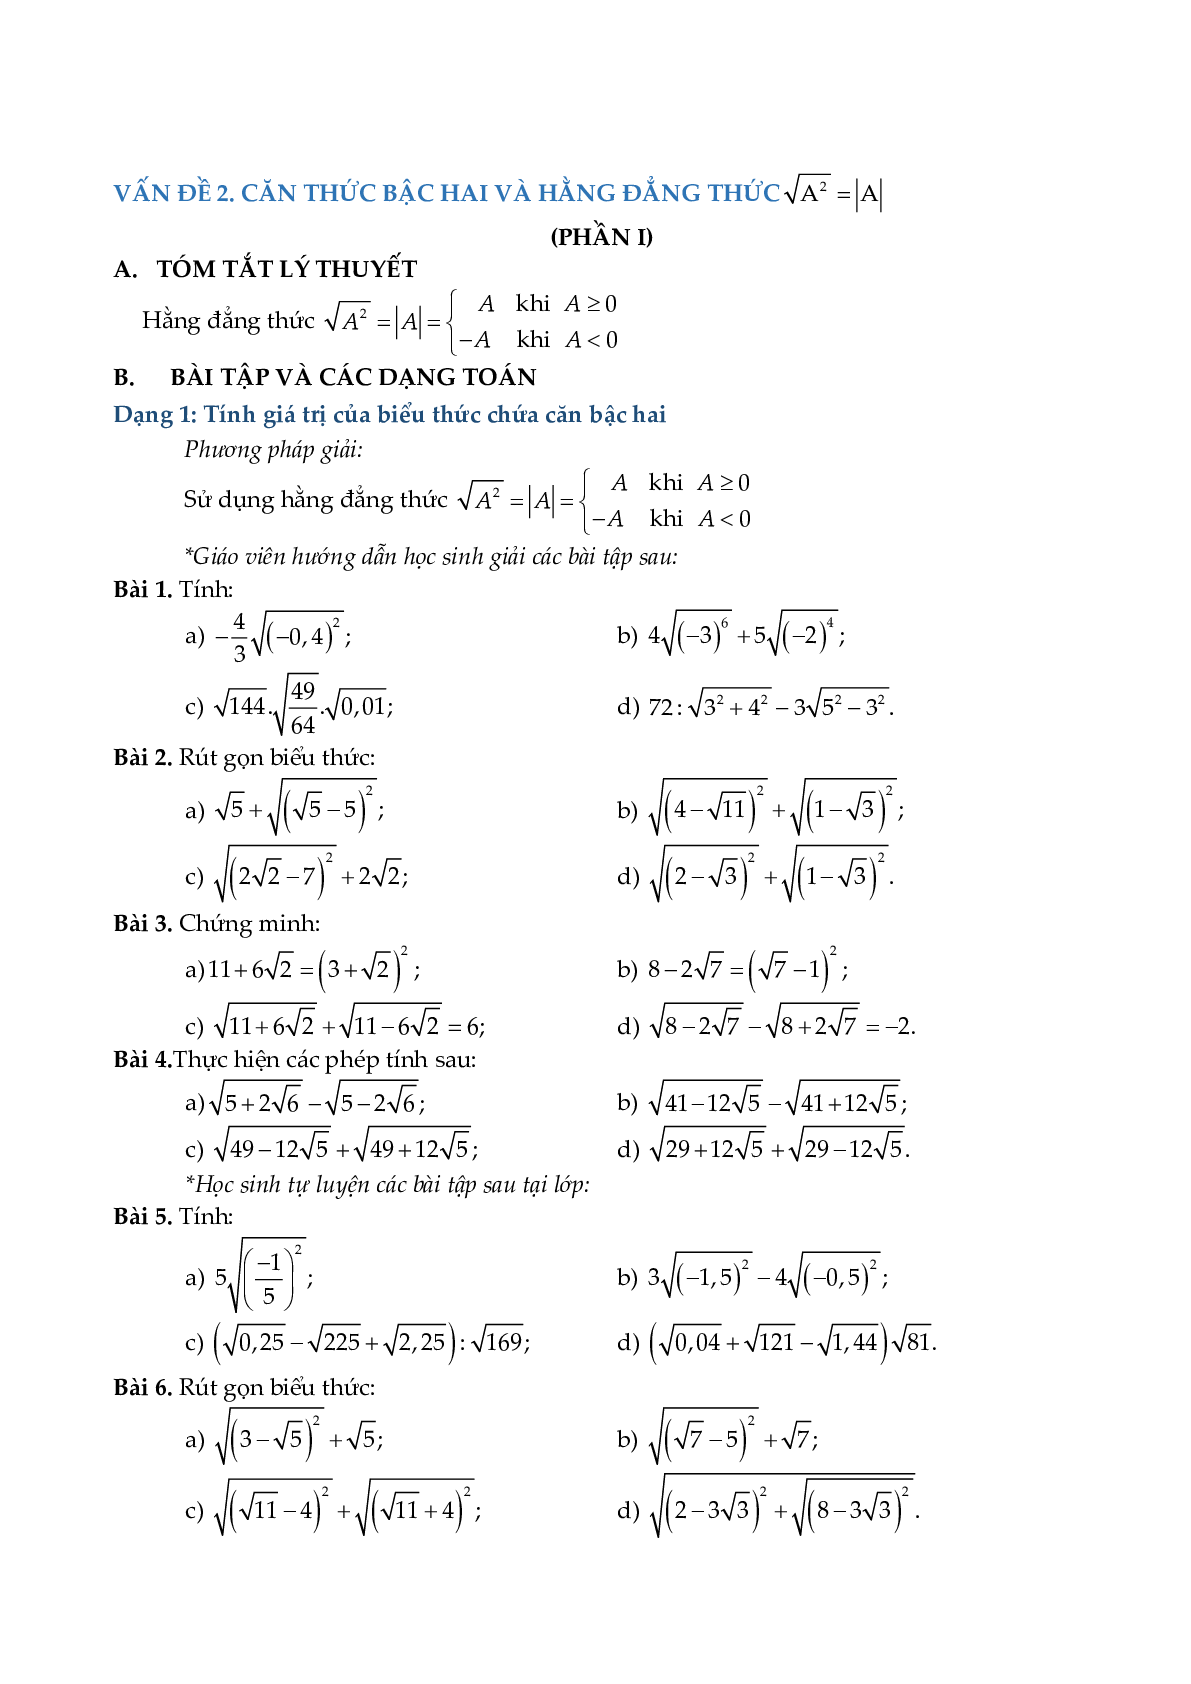 Chuyên đề rút gọn biểu thức và bài toán liên quan (trang 7)